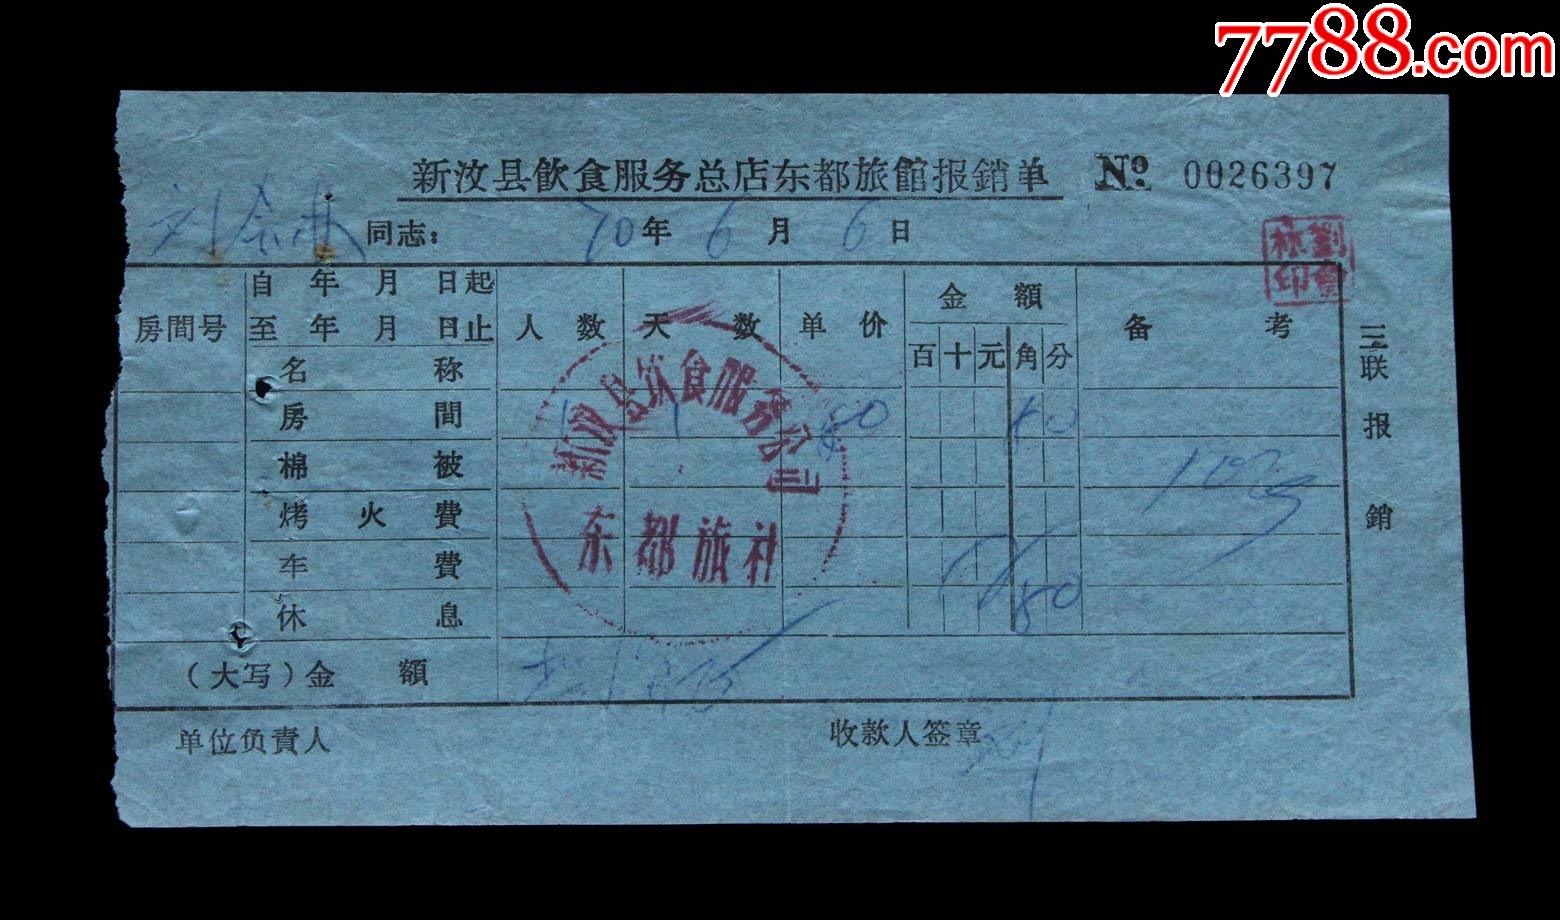 1970年新汶县东都旅社住宿单据一张